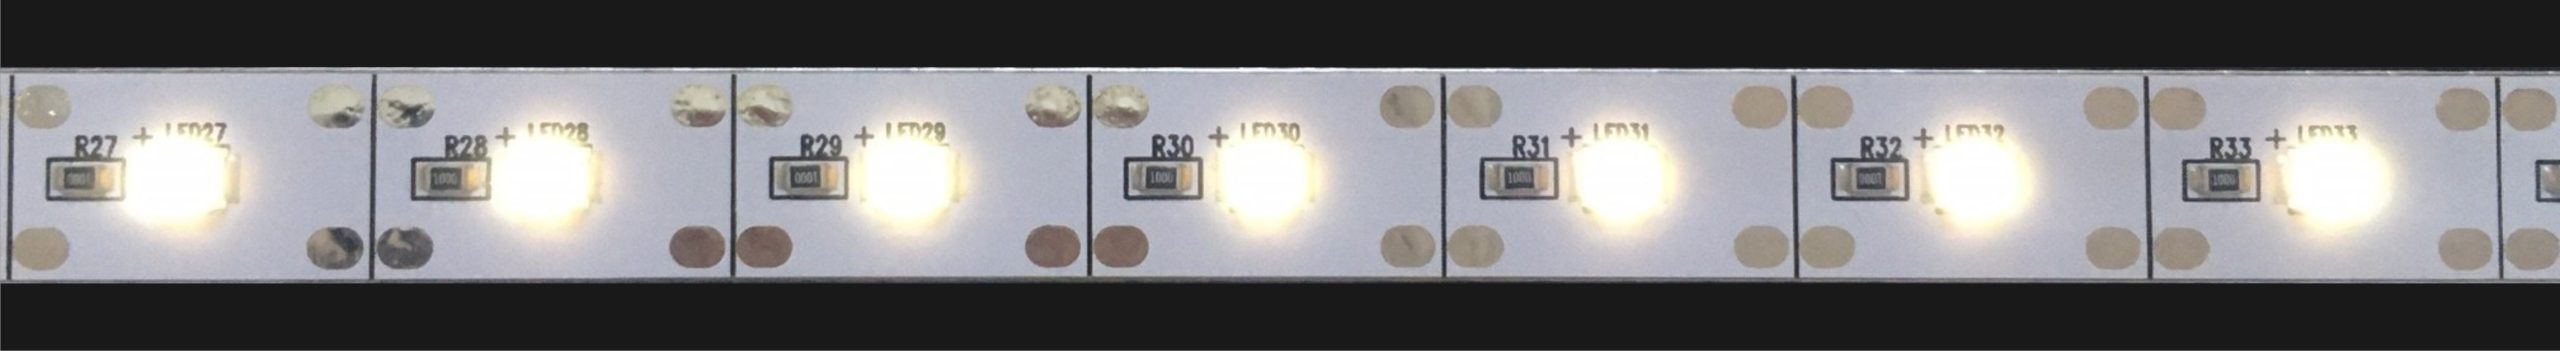 No.1  | Tecoライト5V 昼白色  6800k | 明るさ：355lux 消費電力：2.85ｗ | 500㎜：30球で計測